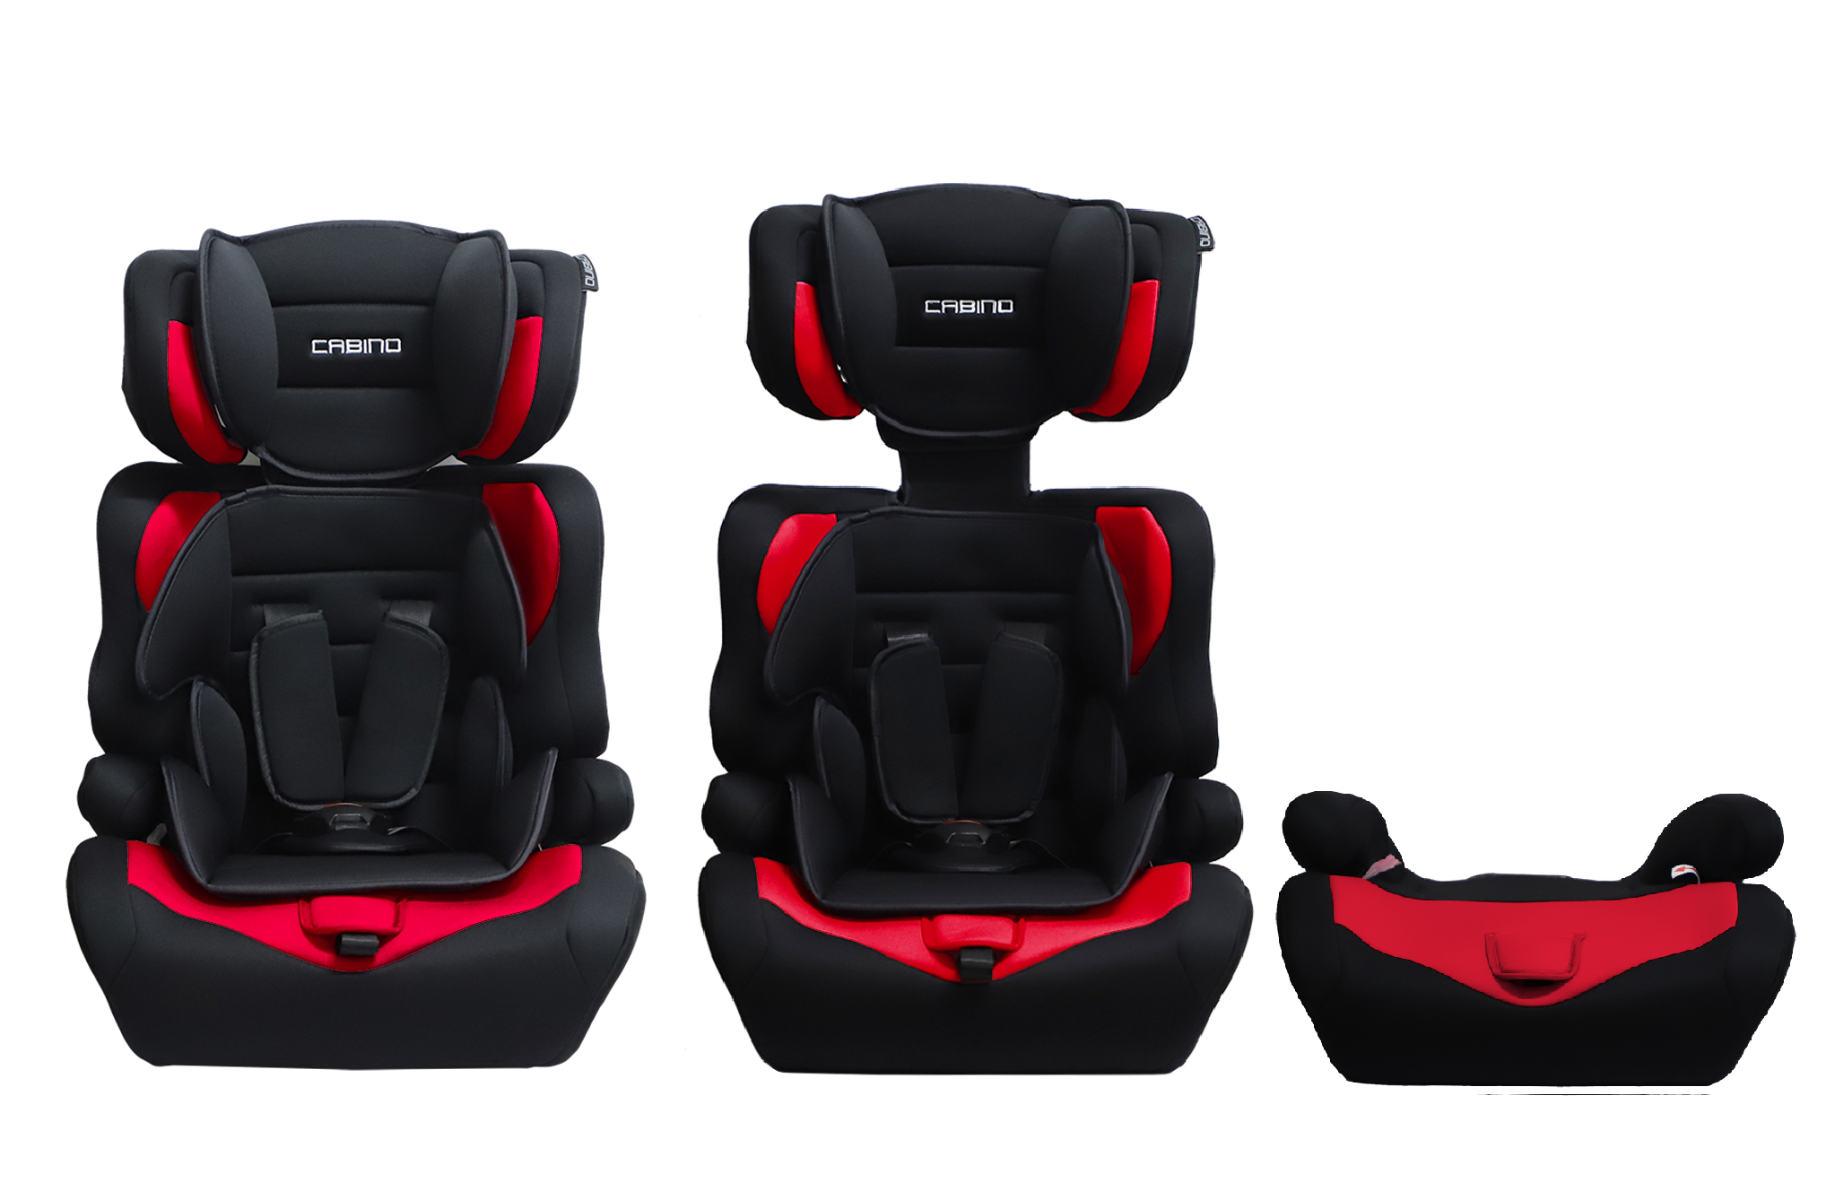 Cabino Autostoel Groep 1 2 3 Zwart Rood kopen? vergelijk prijzen en vind de beste aanbieding bij